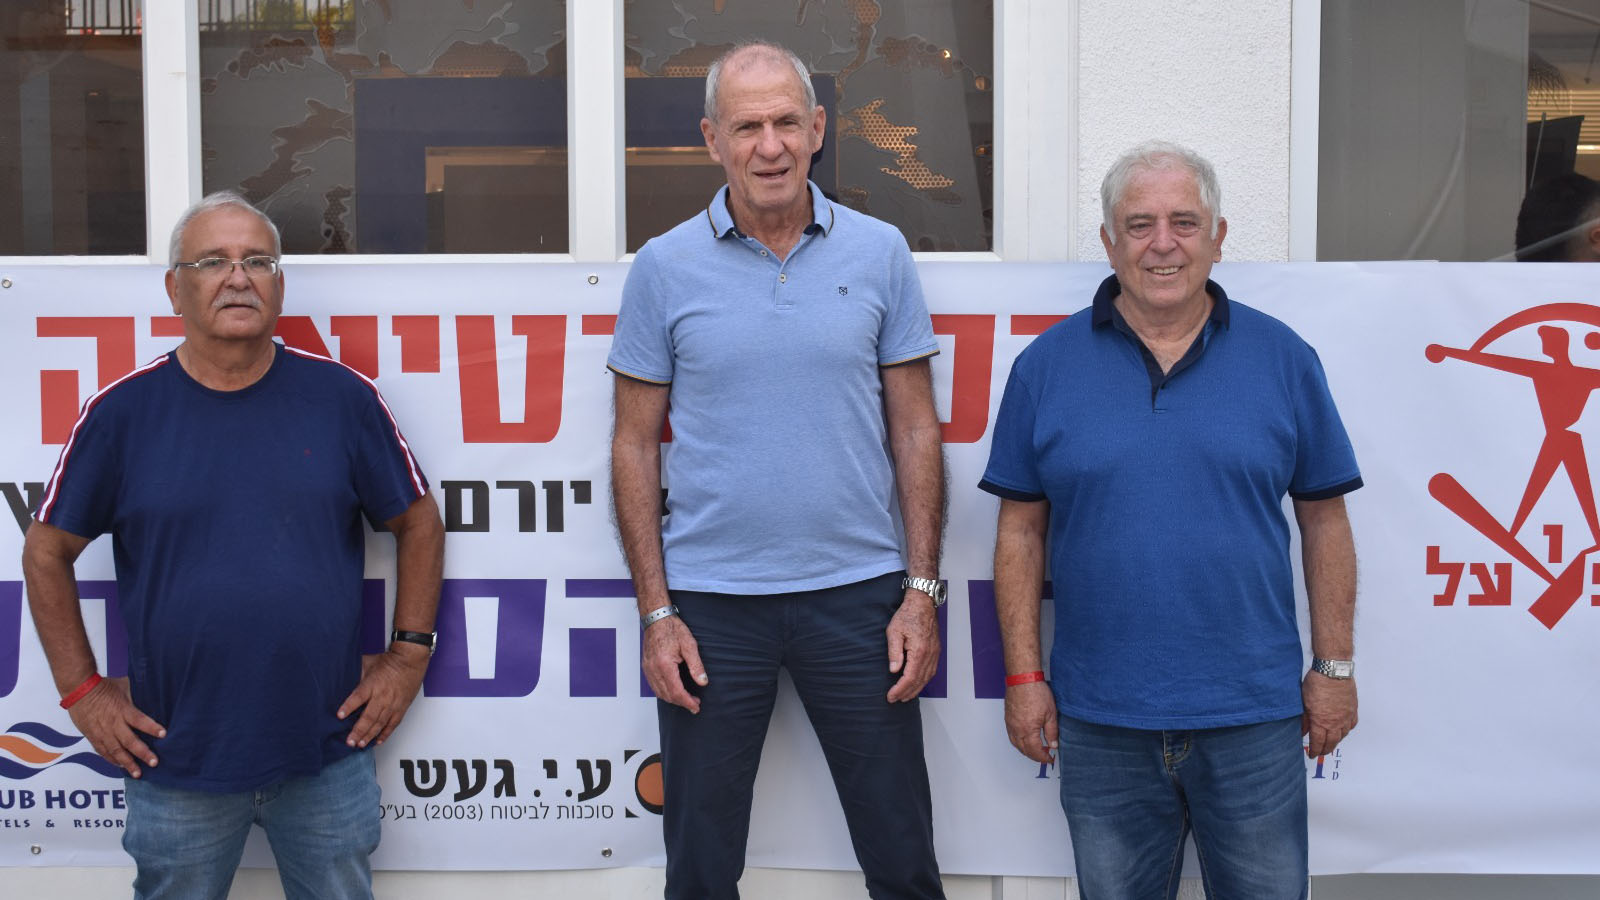 عوديد نحمان (يمين) ويورام أورنشتاين (الوسط) يعقوب أبو شاتزيرا (يسار) (الصورة: يائير زوكر)